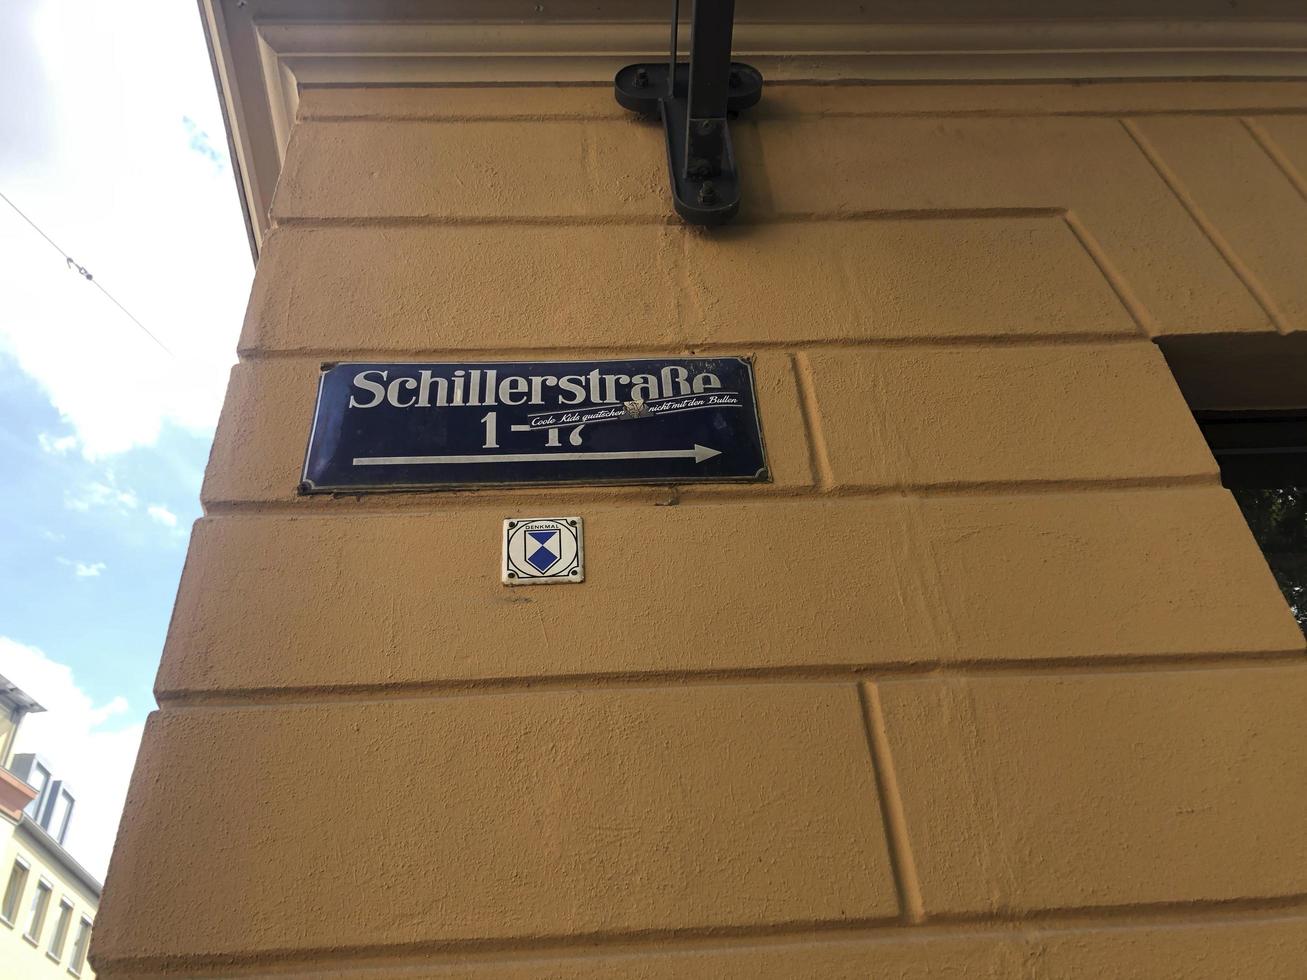 Weimar, Germany, 2019 - Schillerstrasse street sign photo